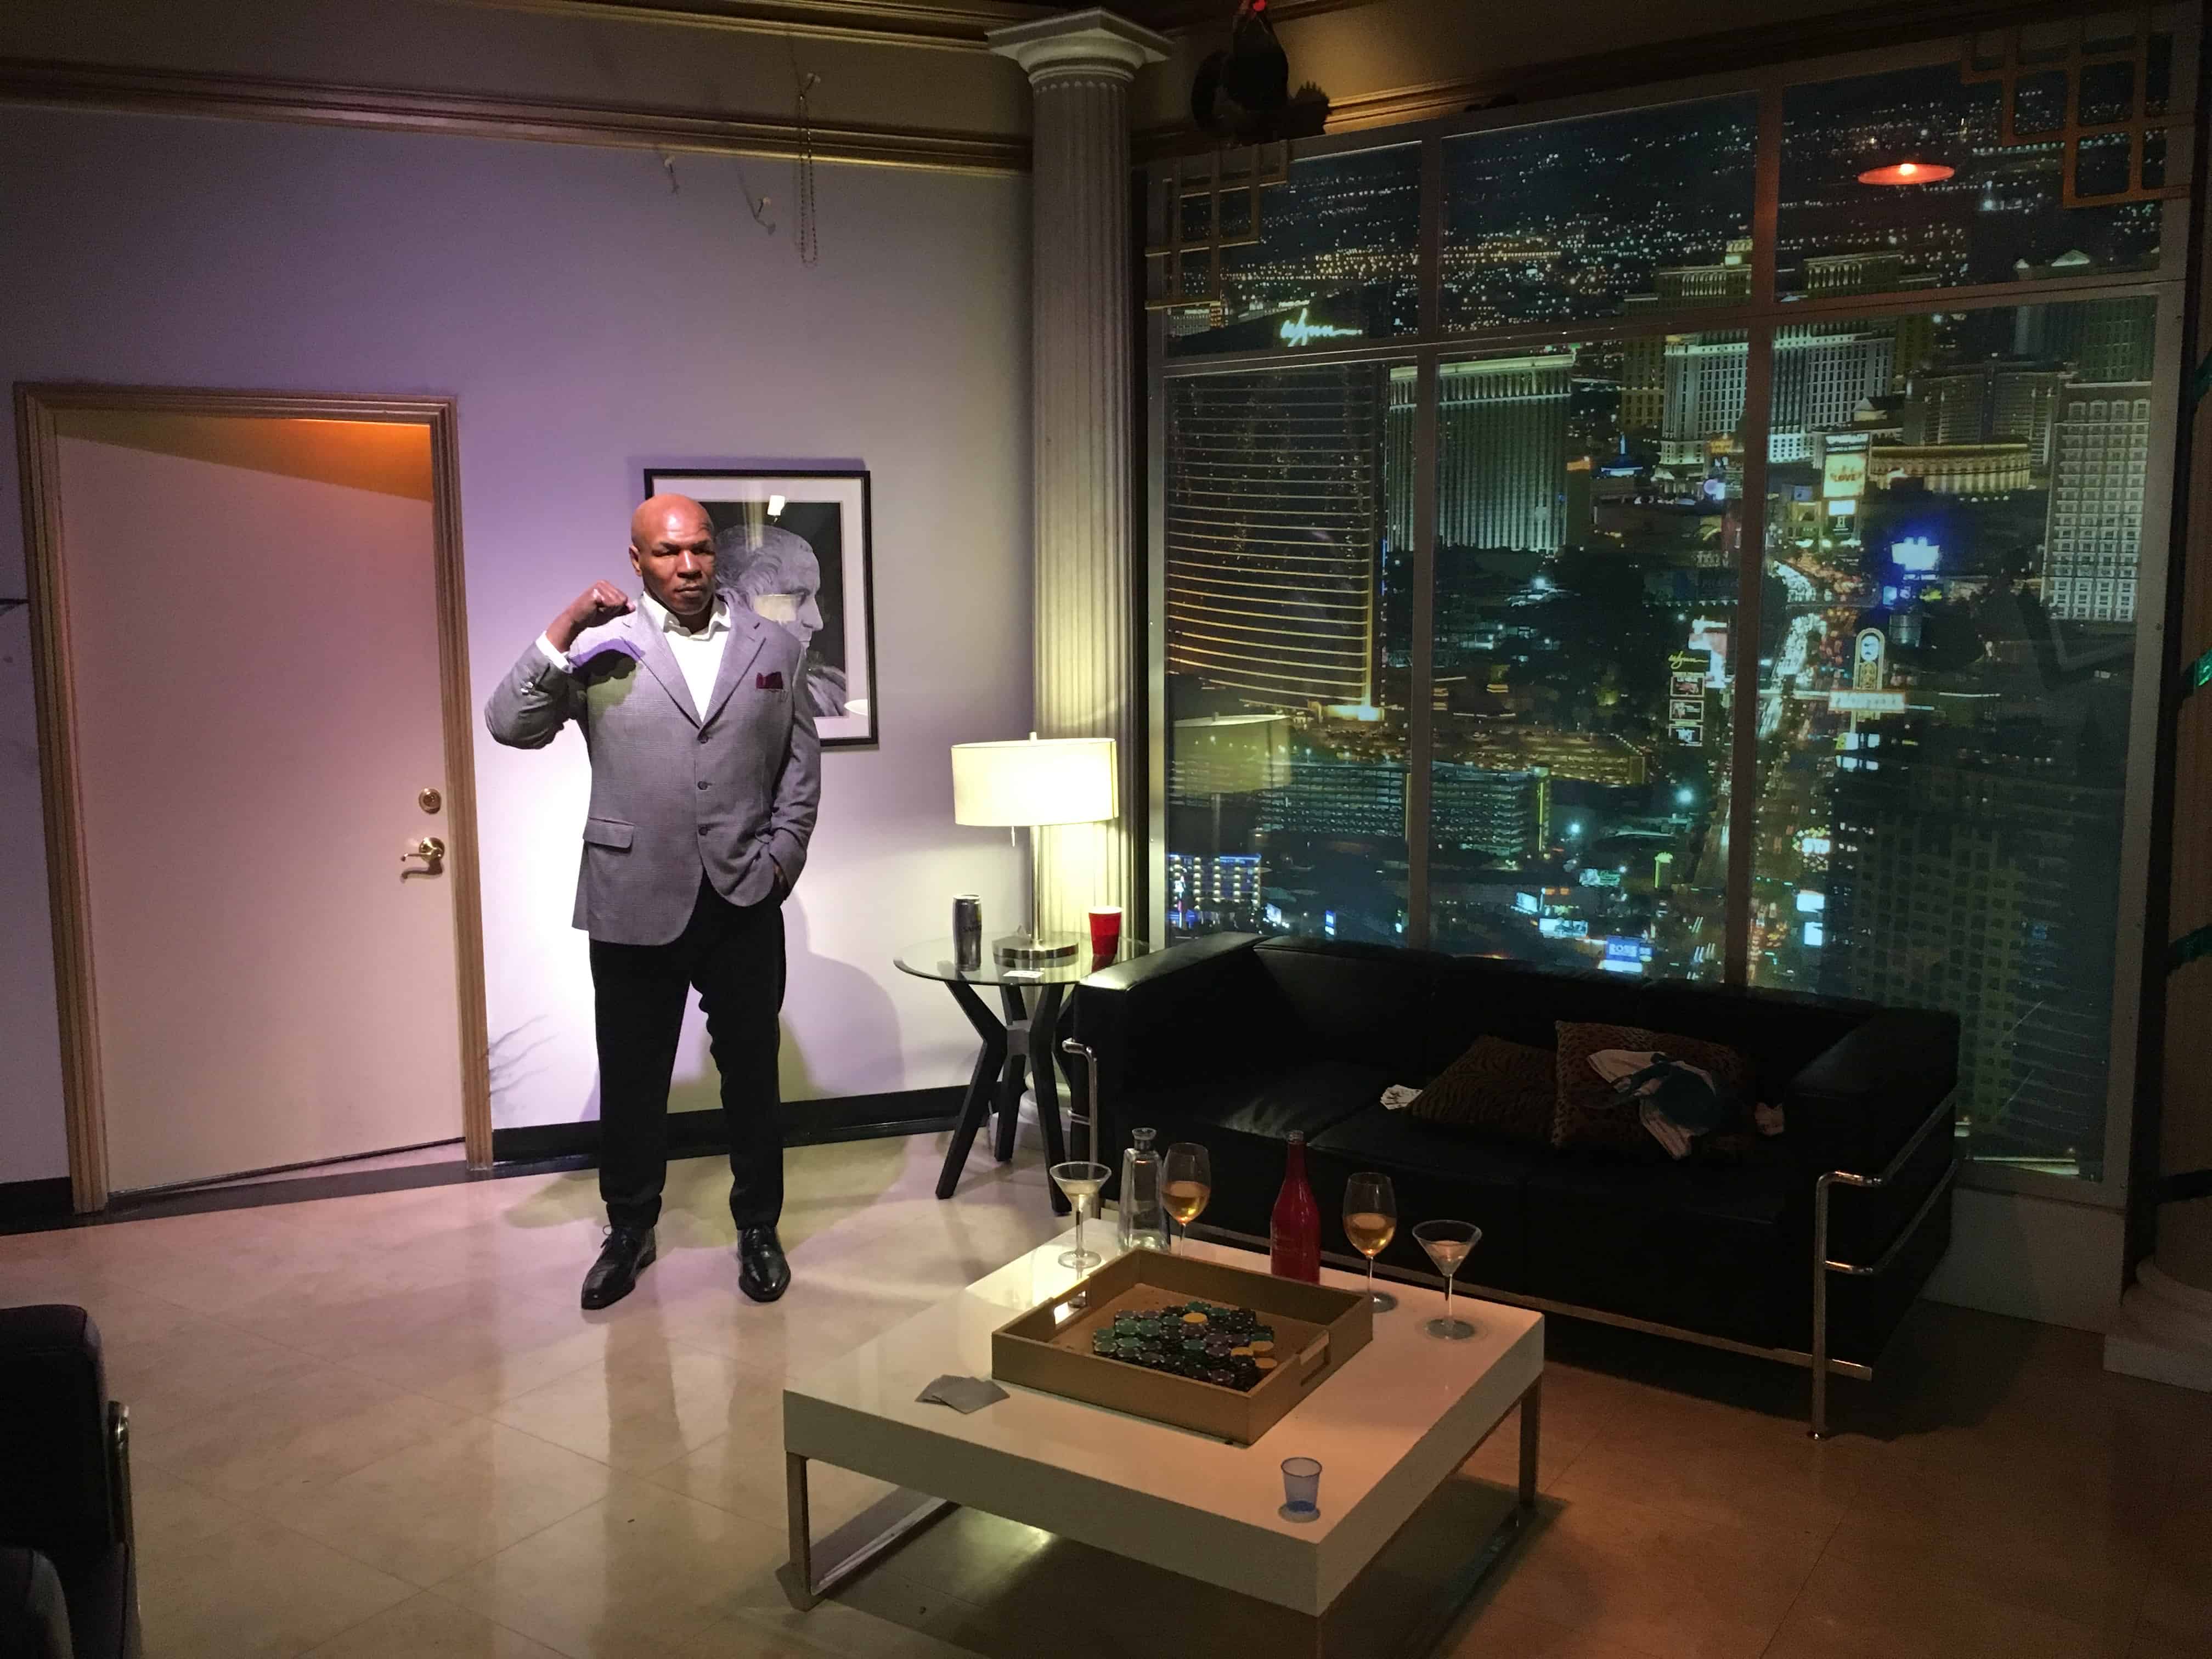 Mike Tyson at Madame Tussauds Las Vegas